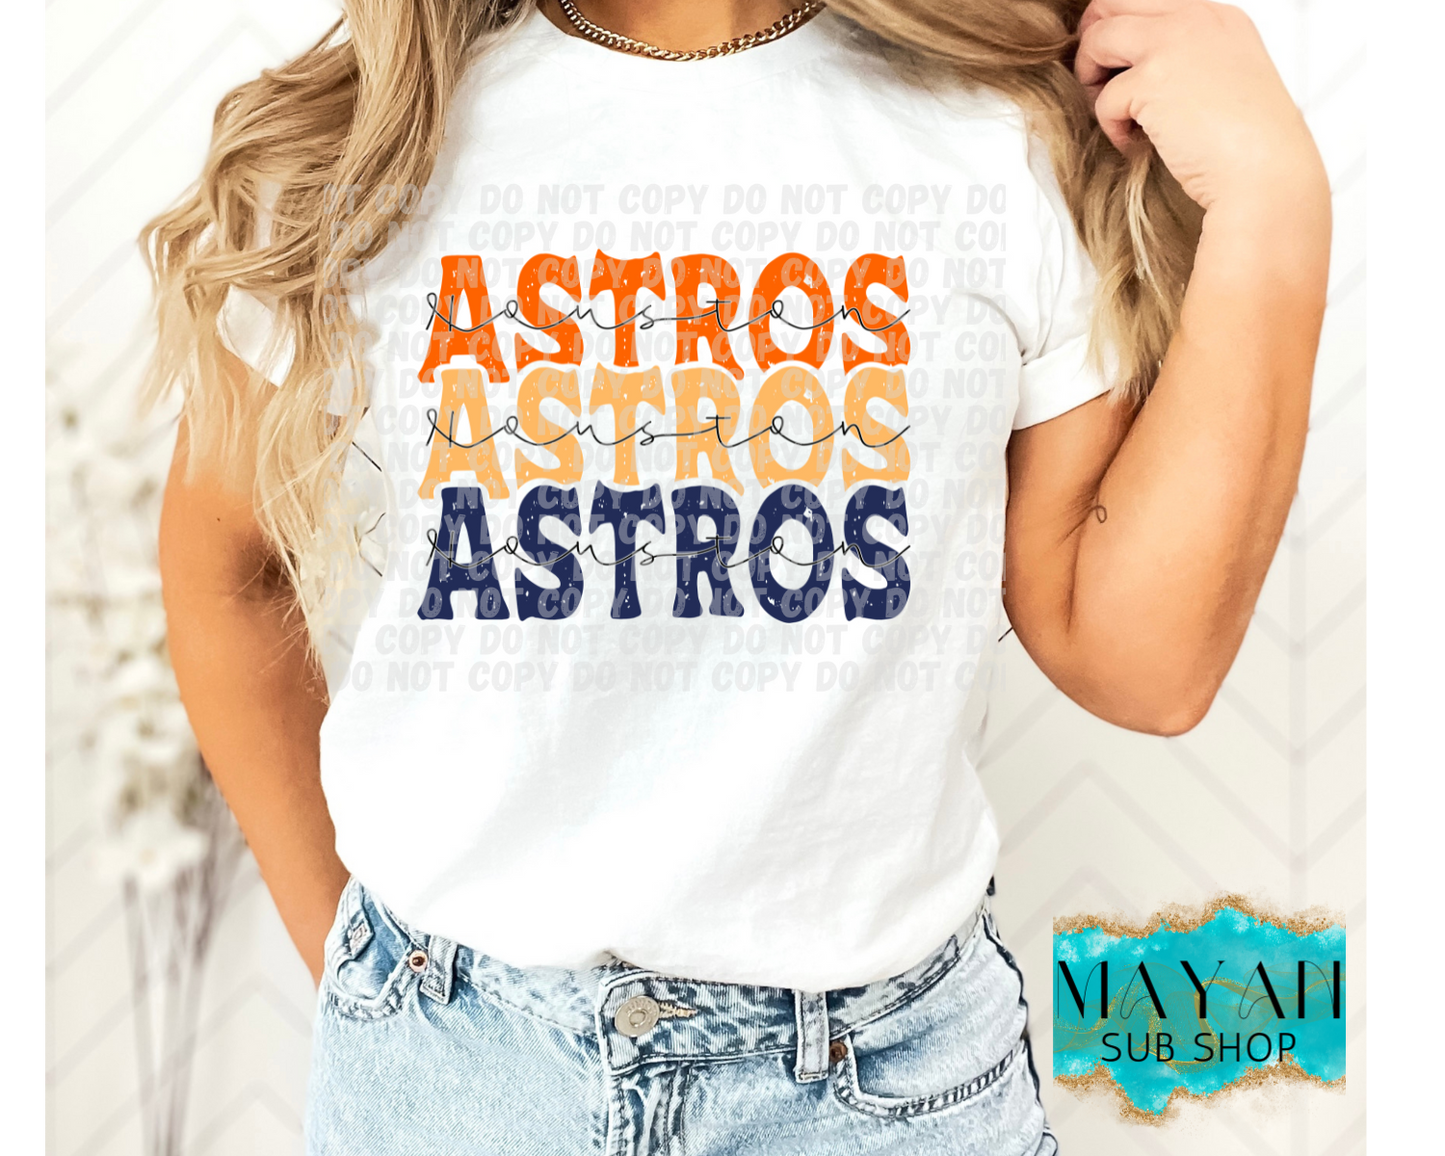 Astros stacked shirt. -Mayan Sub Shop